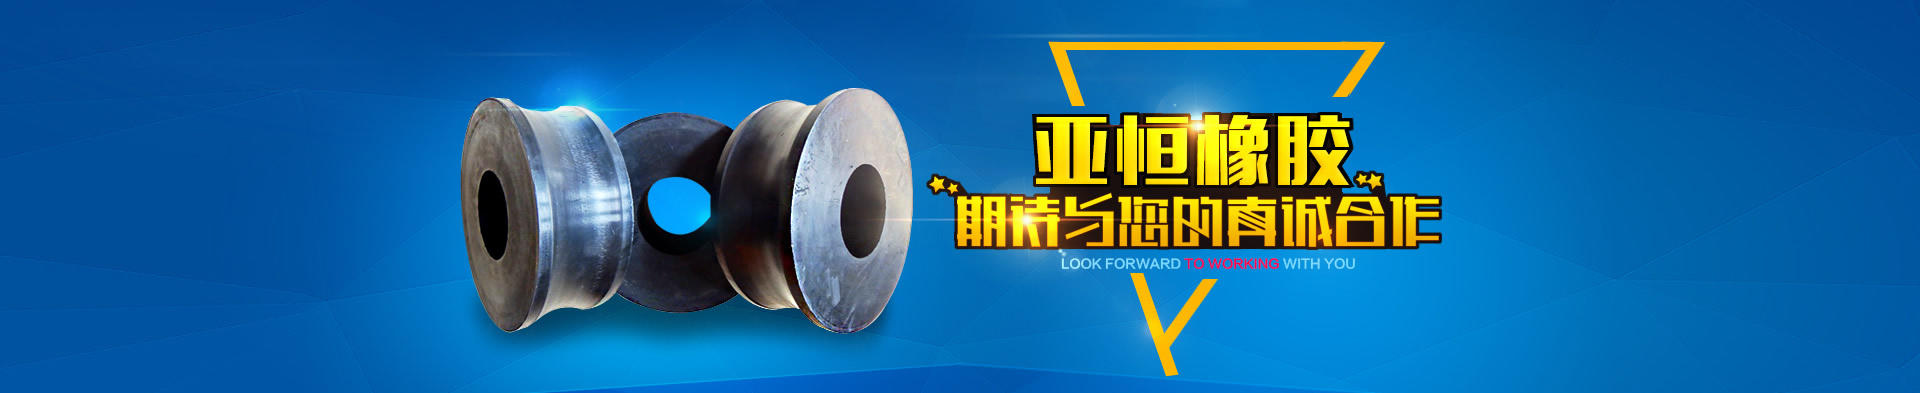 河北亞恒橡膠科技有限公司專業研發、生產及加工各類橡膠類制品